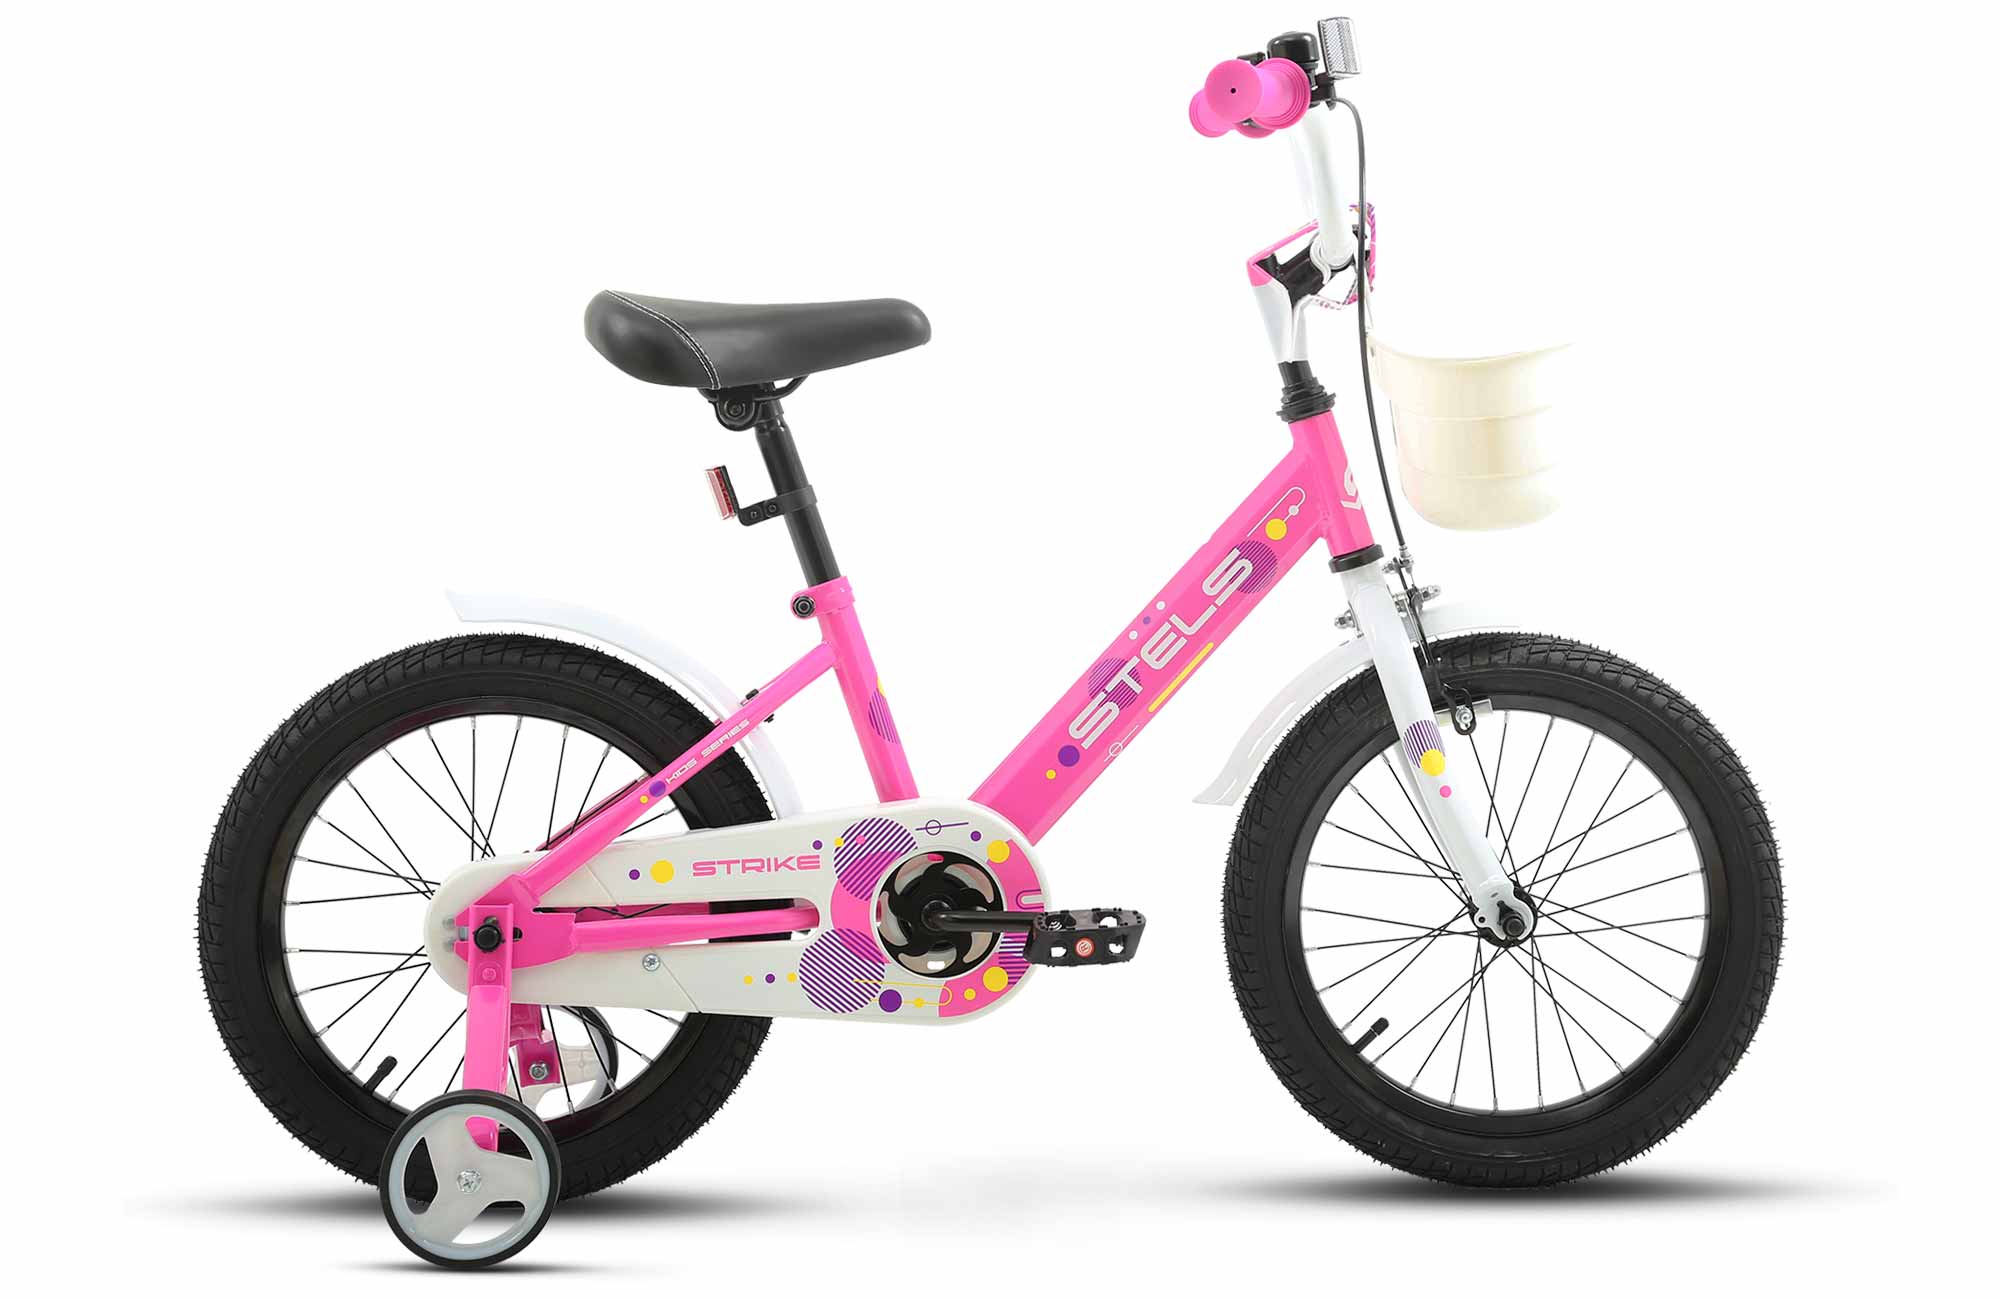 Детский велосипед STELS Strike VC 16 Z010 9.6 Розовый, с дополнительными колесами детский велосипед stels storm kr 14 z010 7 8 оранжевый с боковыми колесами